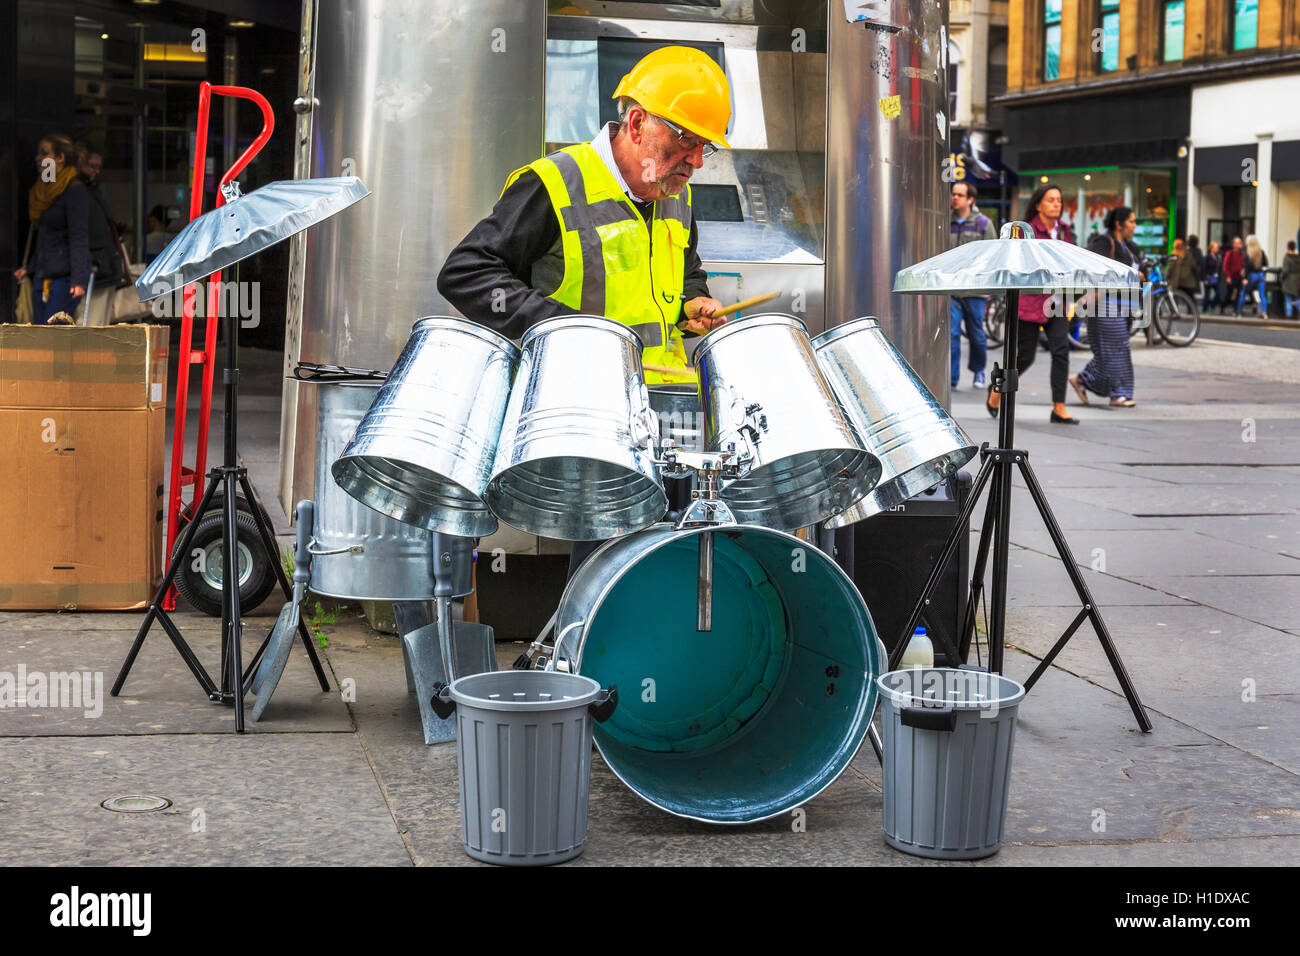 Musicien ambulant jouant à Glasgow, à l'aide de poubelles comme un ensemble de batterie, Glasgow, Écosse, Royaume-Uni Banque D'Images